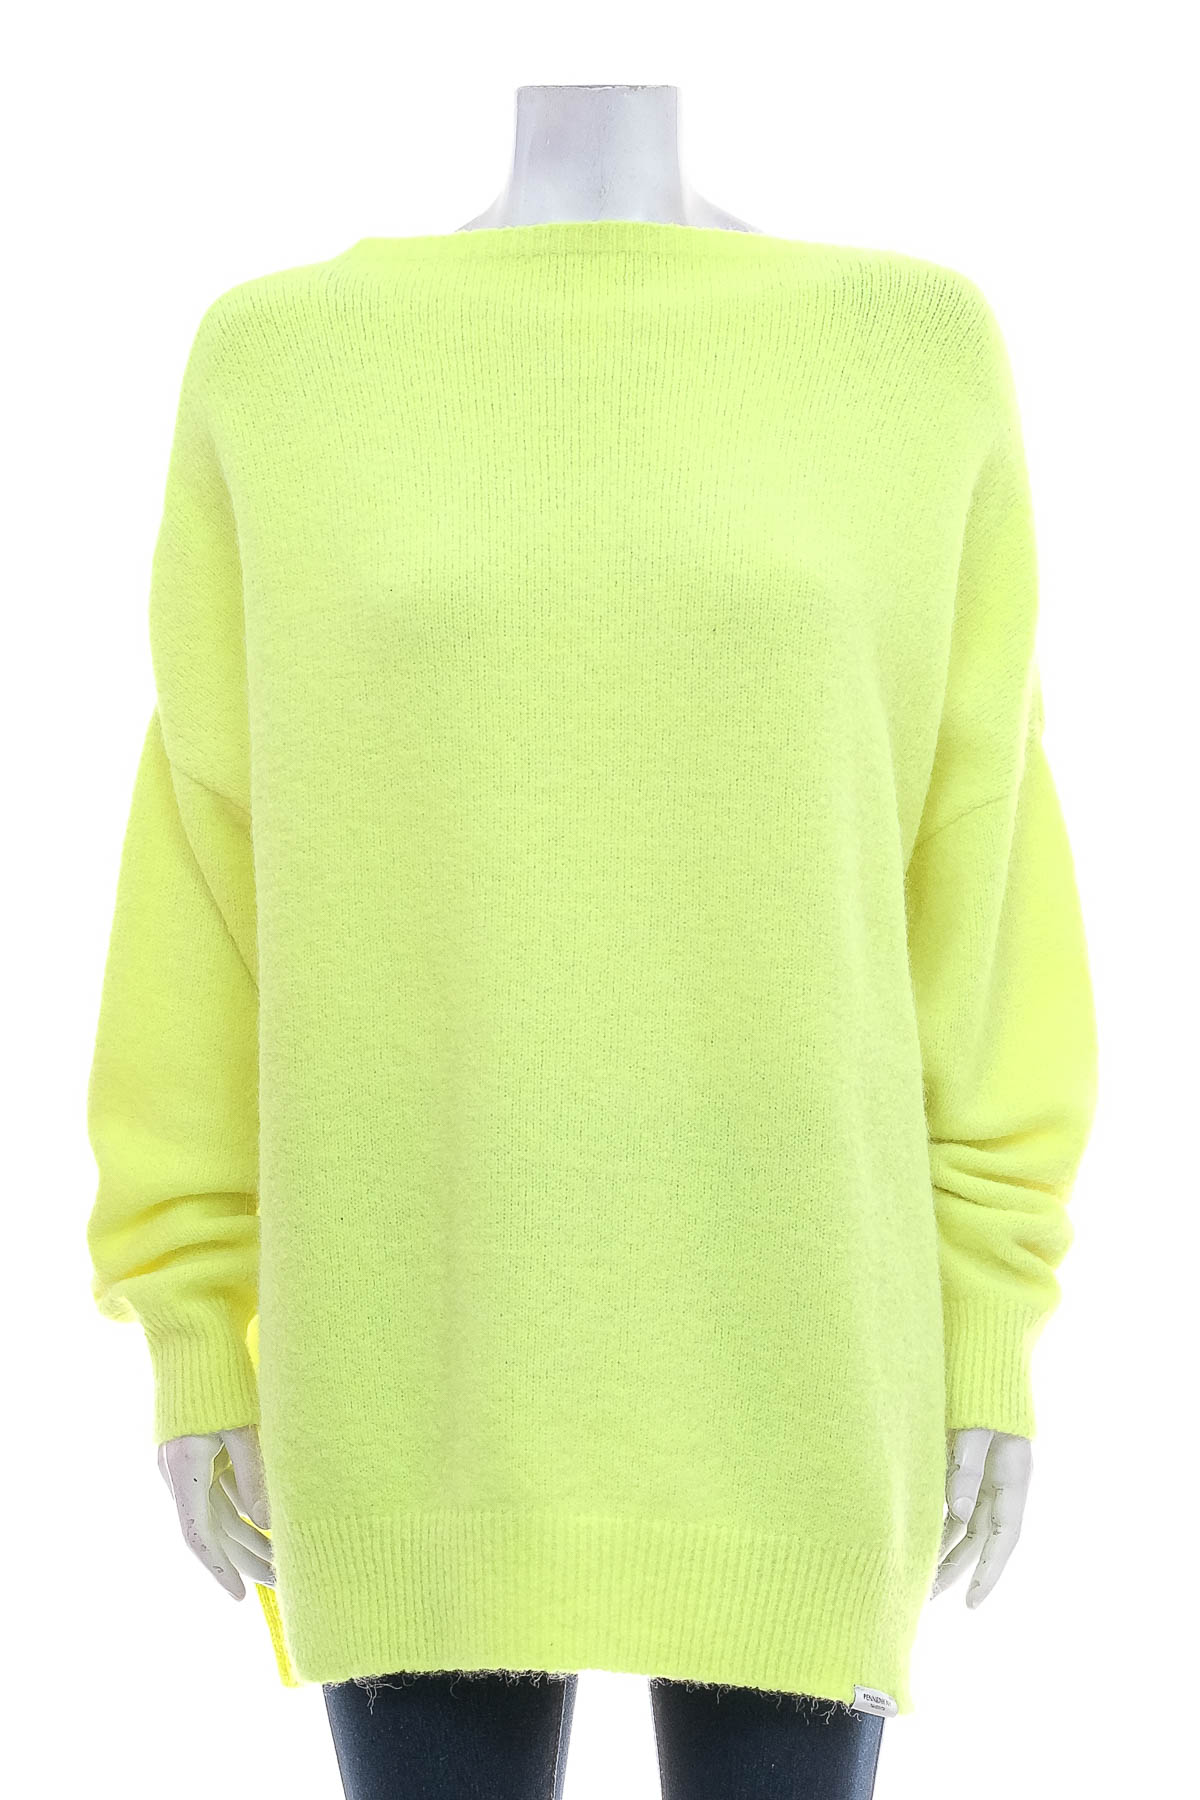 Women's sweater - PENN&INK N.Y - 0